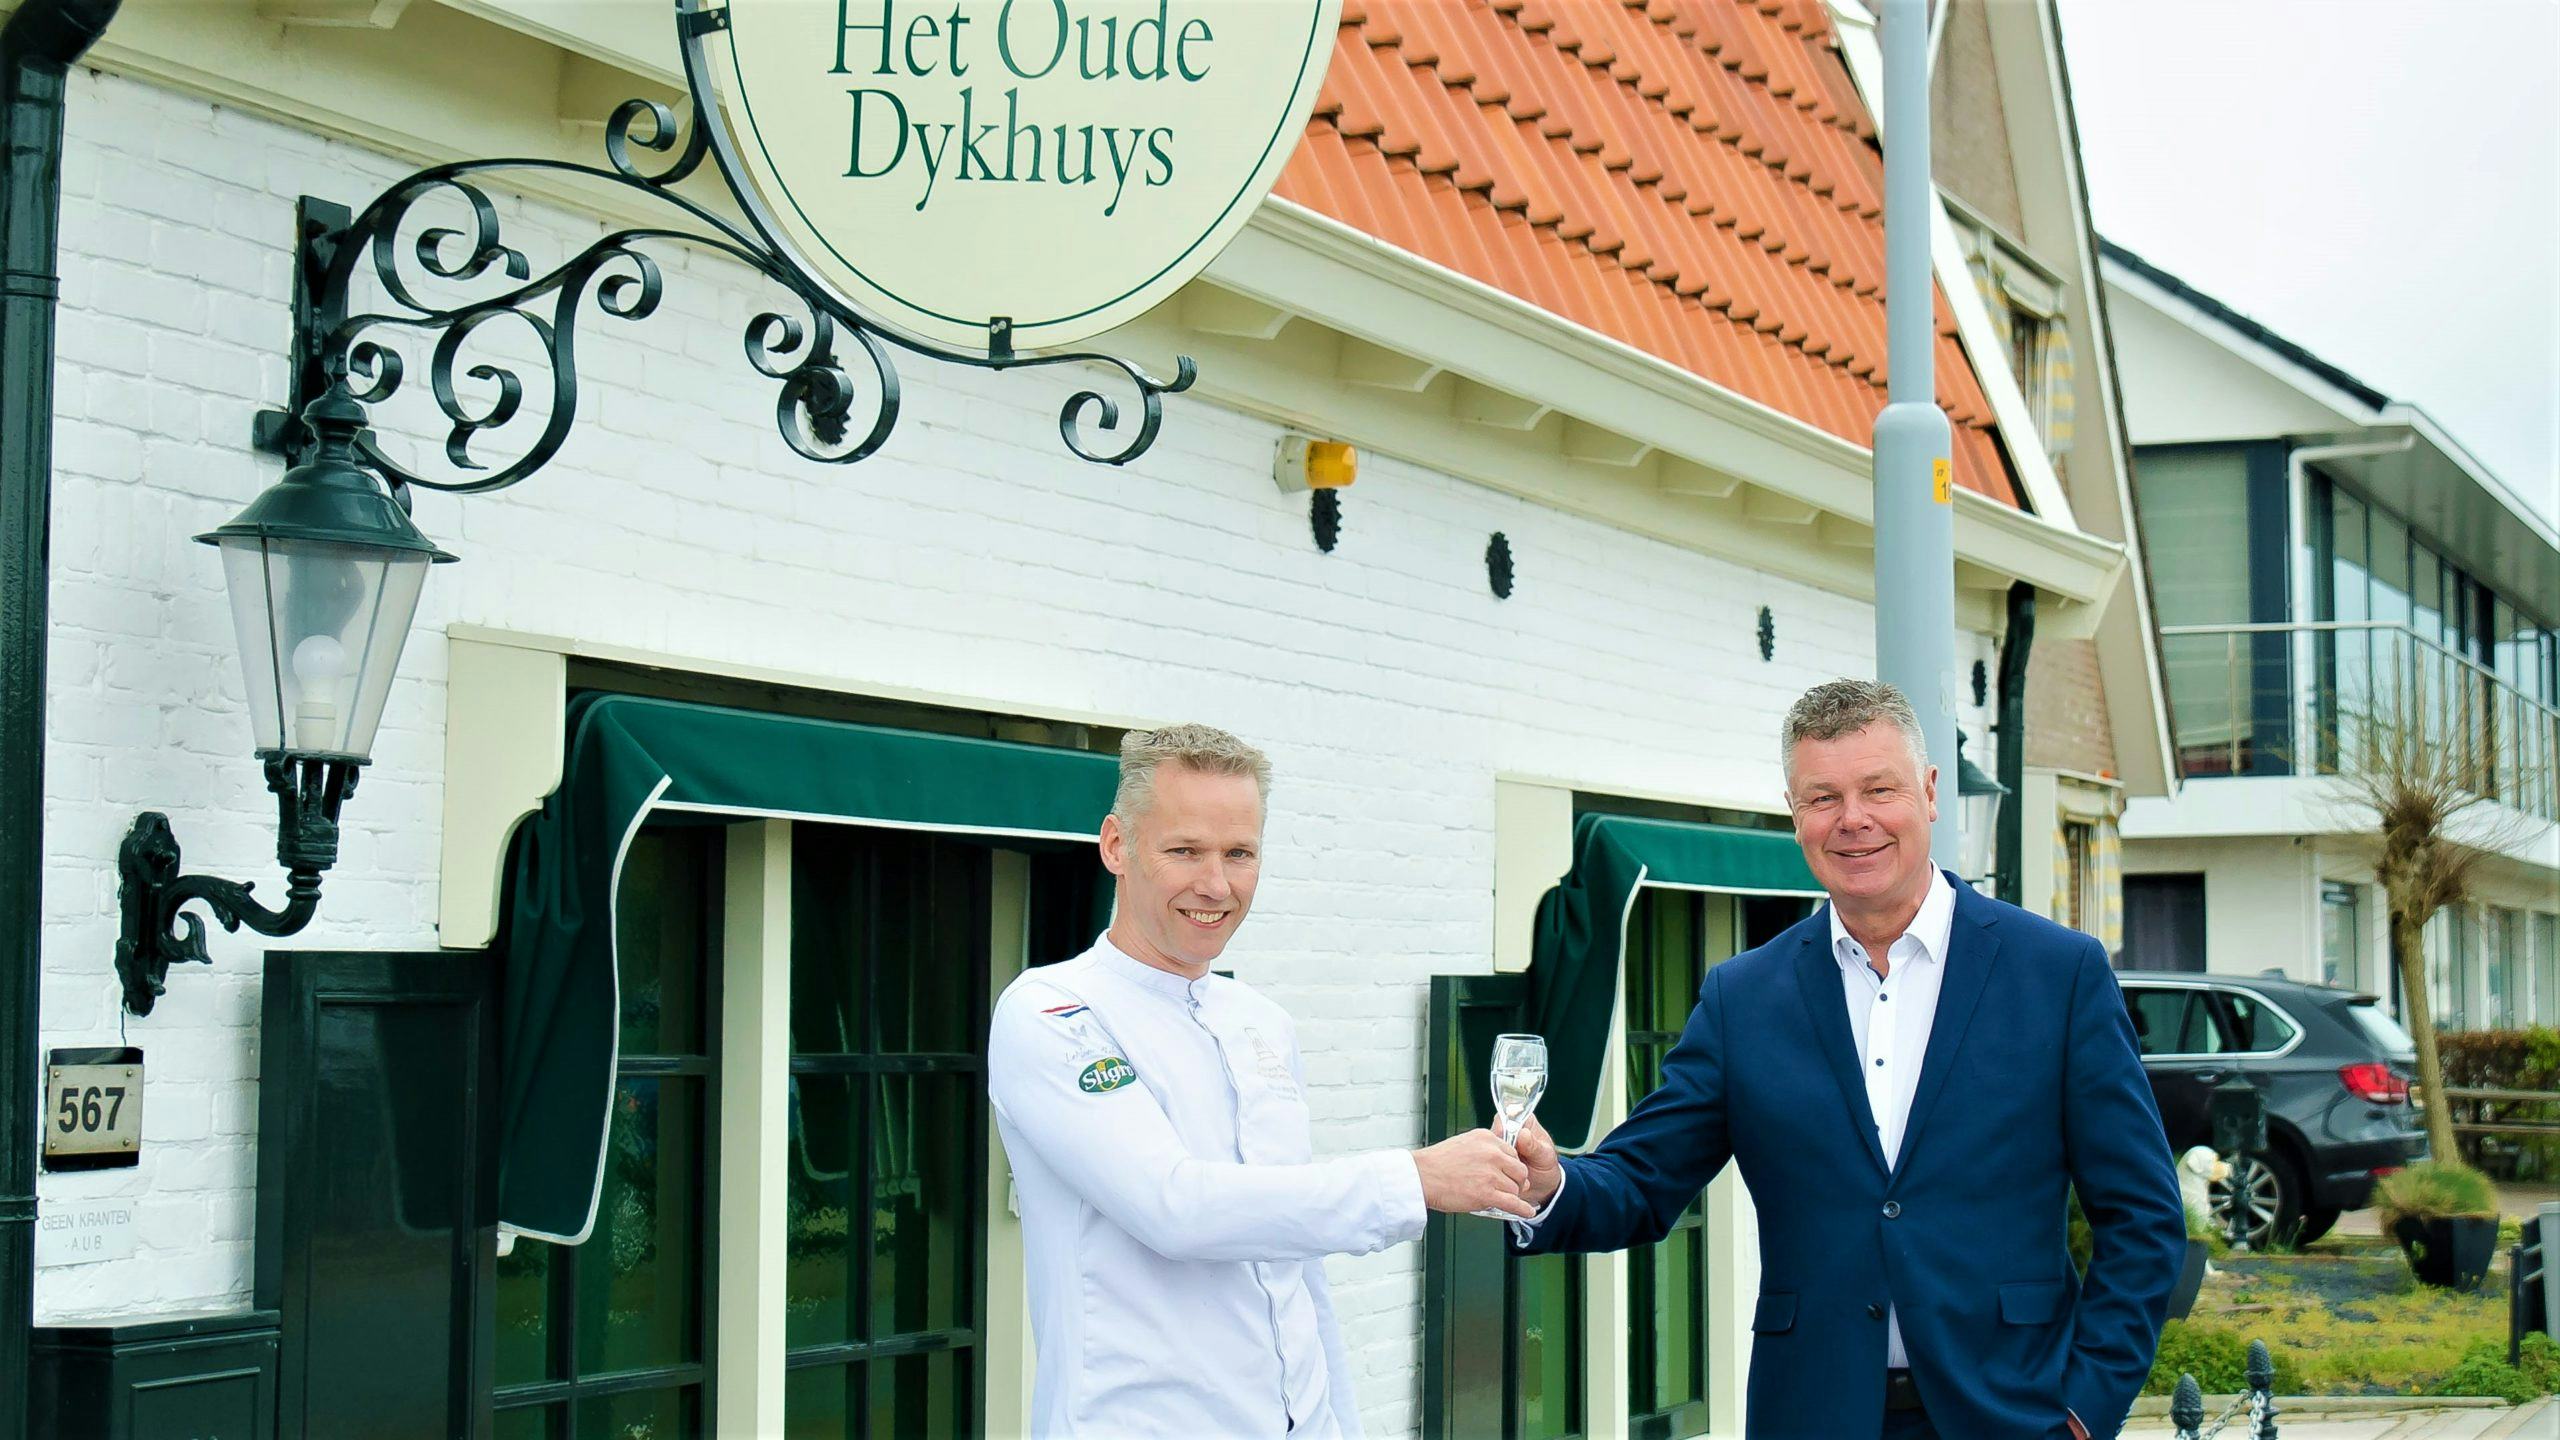 Wedstrijdkok Alfred van Dijk neemt restaurant Het Oude Dykhuys over